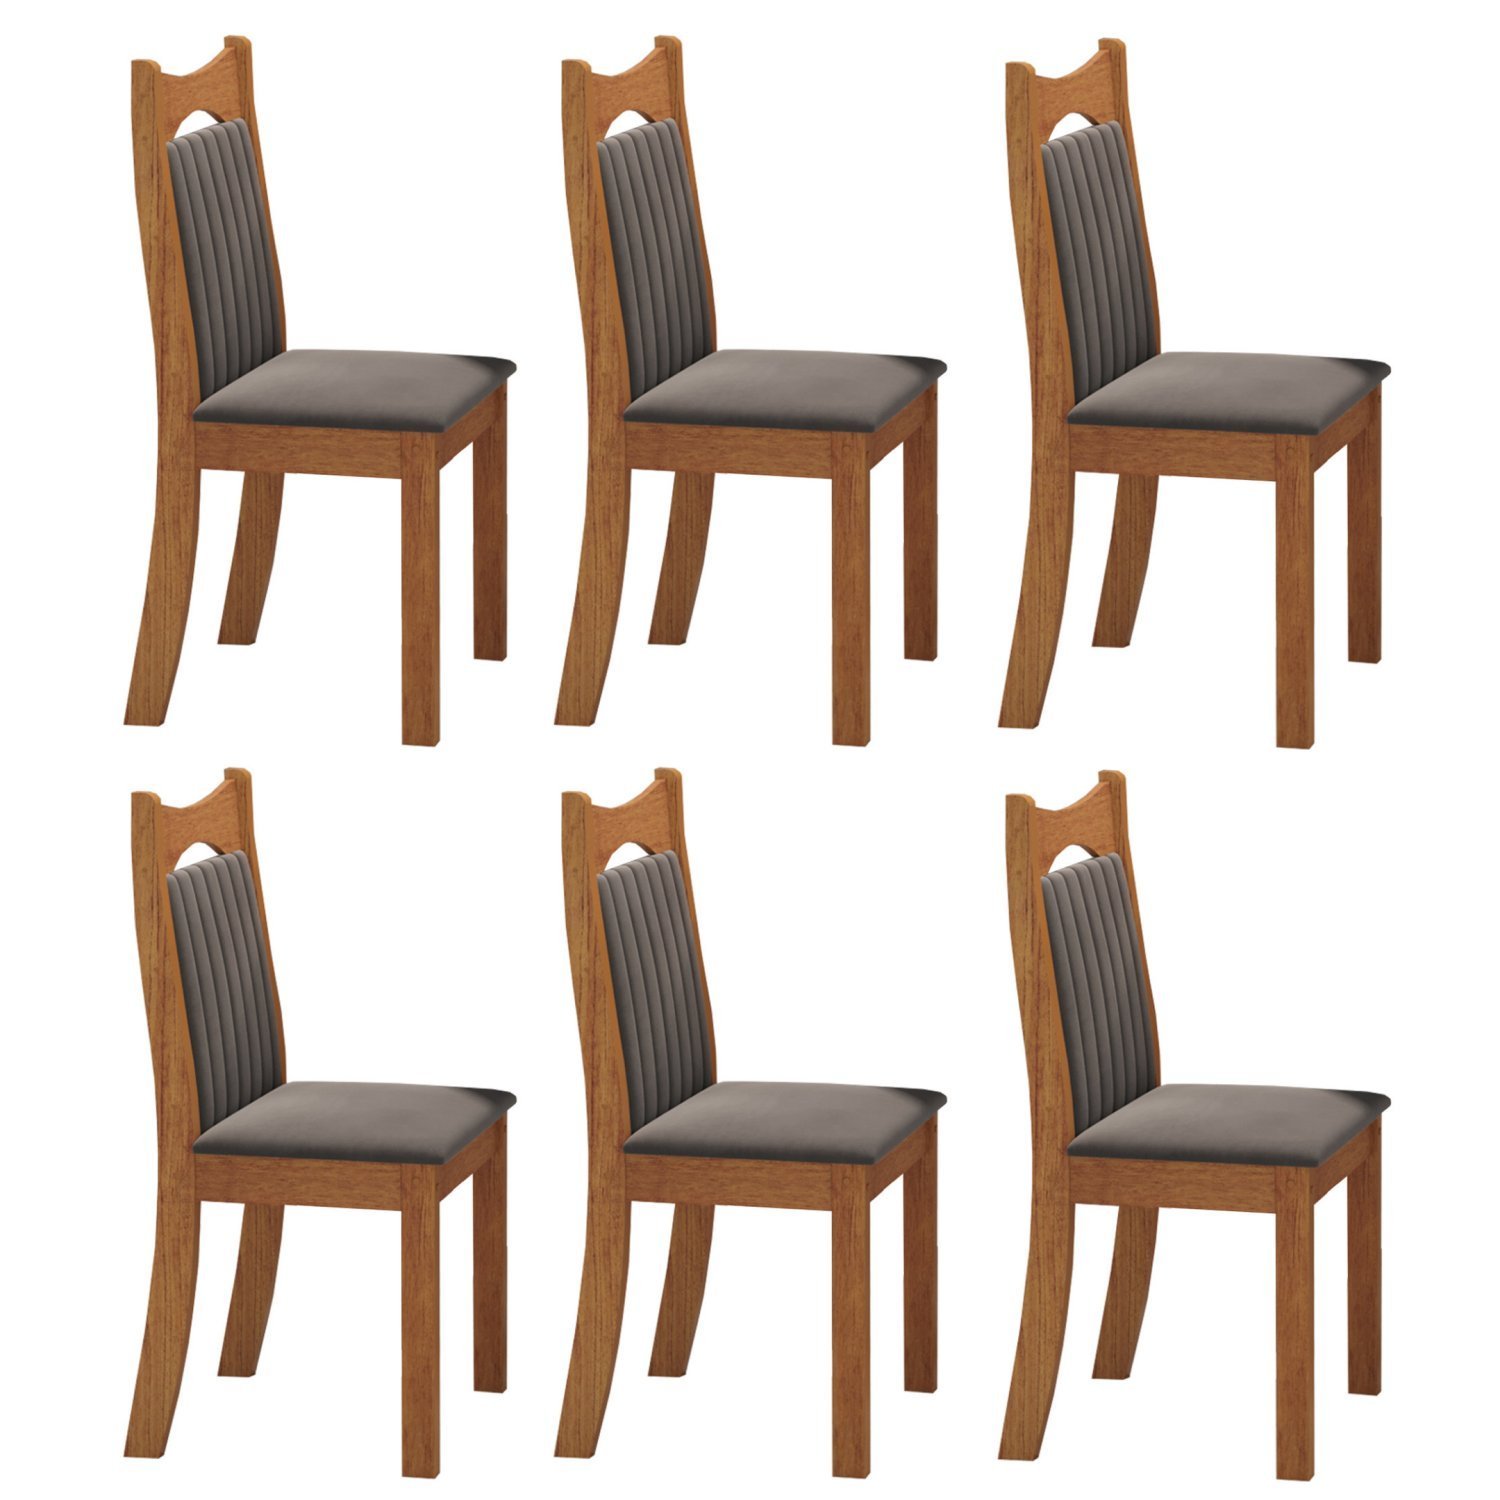 Kit com 6 Cadeiras para Sala de Jantar Mdp/mdf Dalas